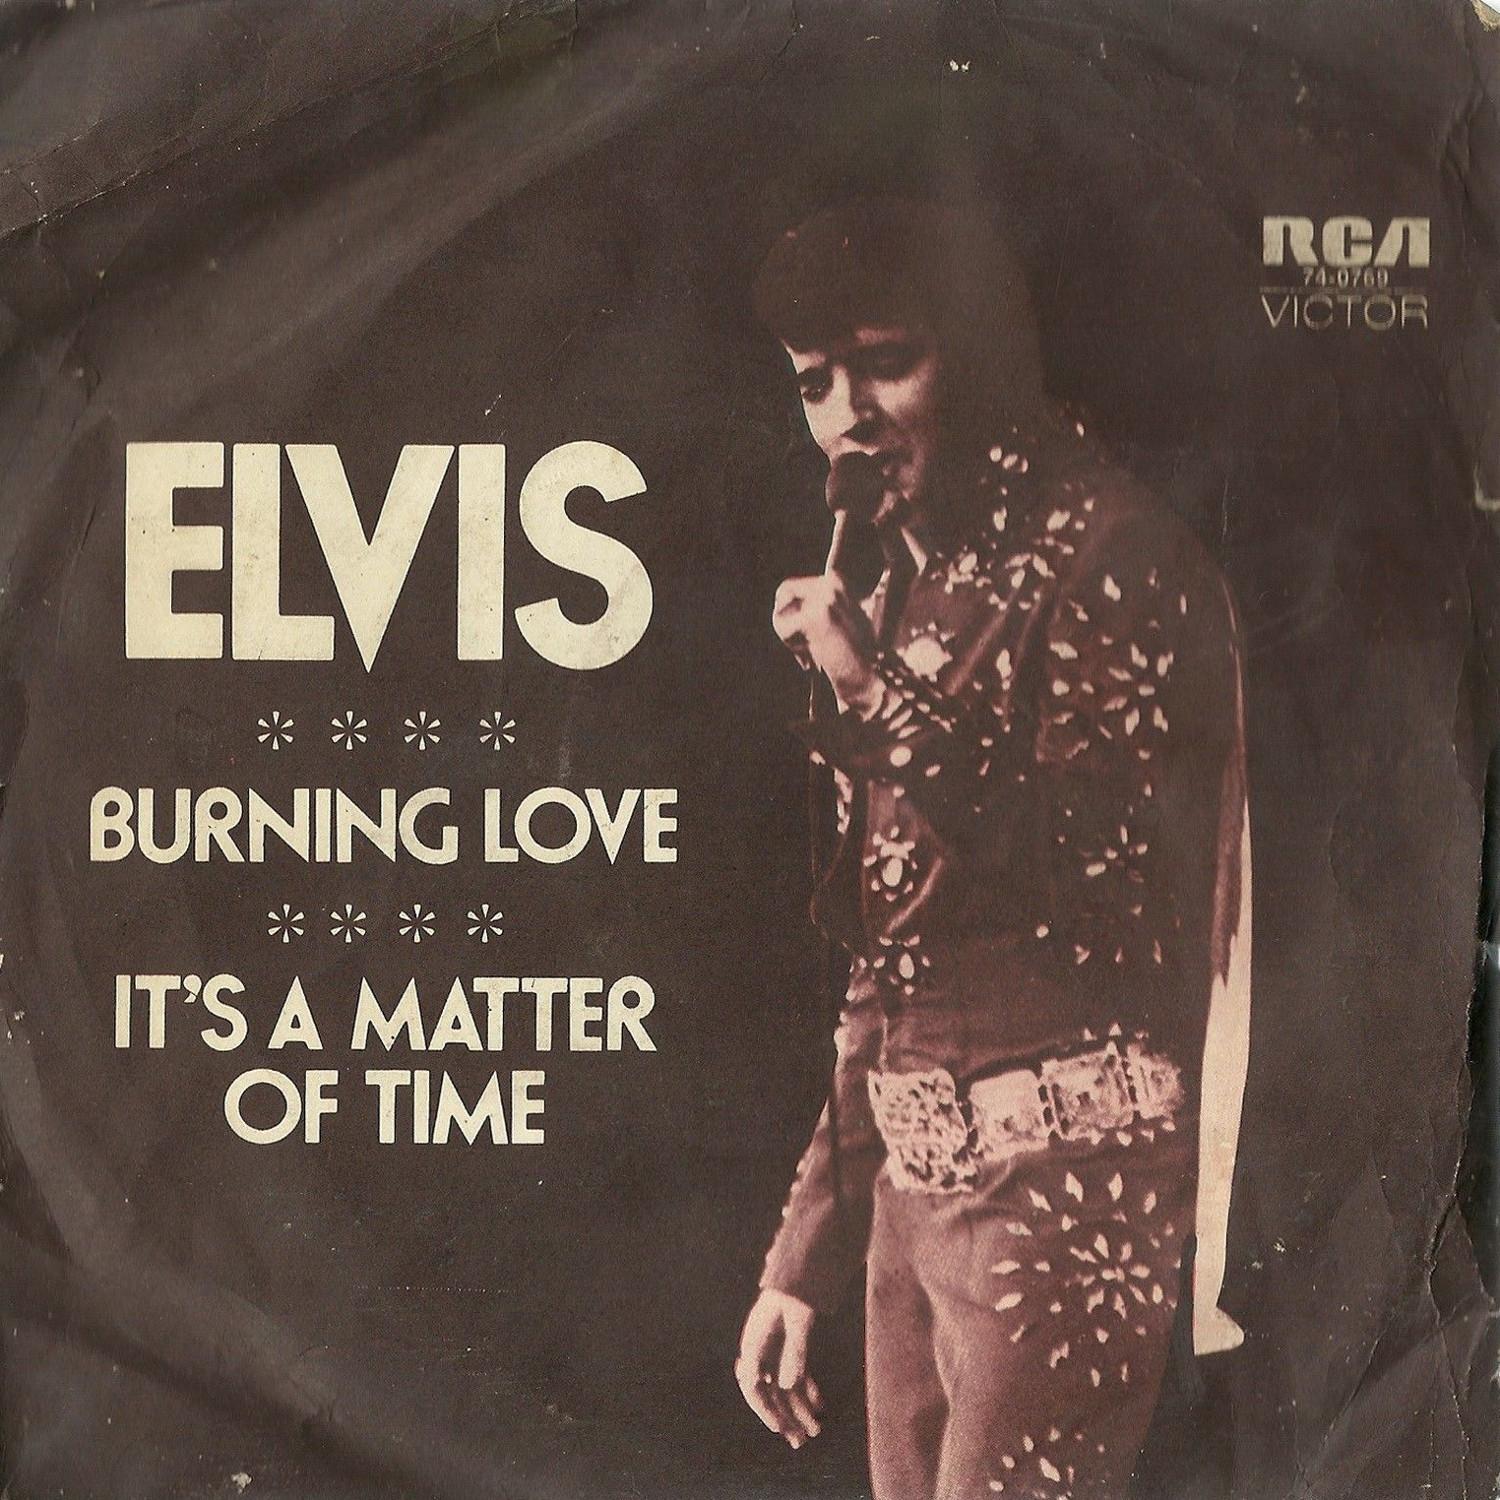 Burning Love / It's A Matter Of Time 47-0769auss1z